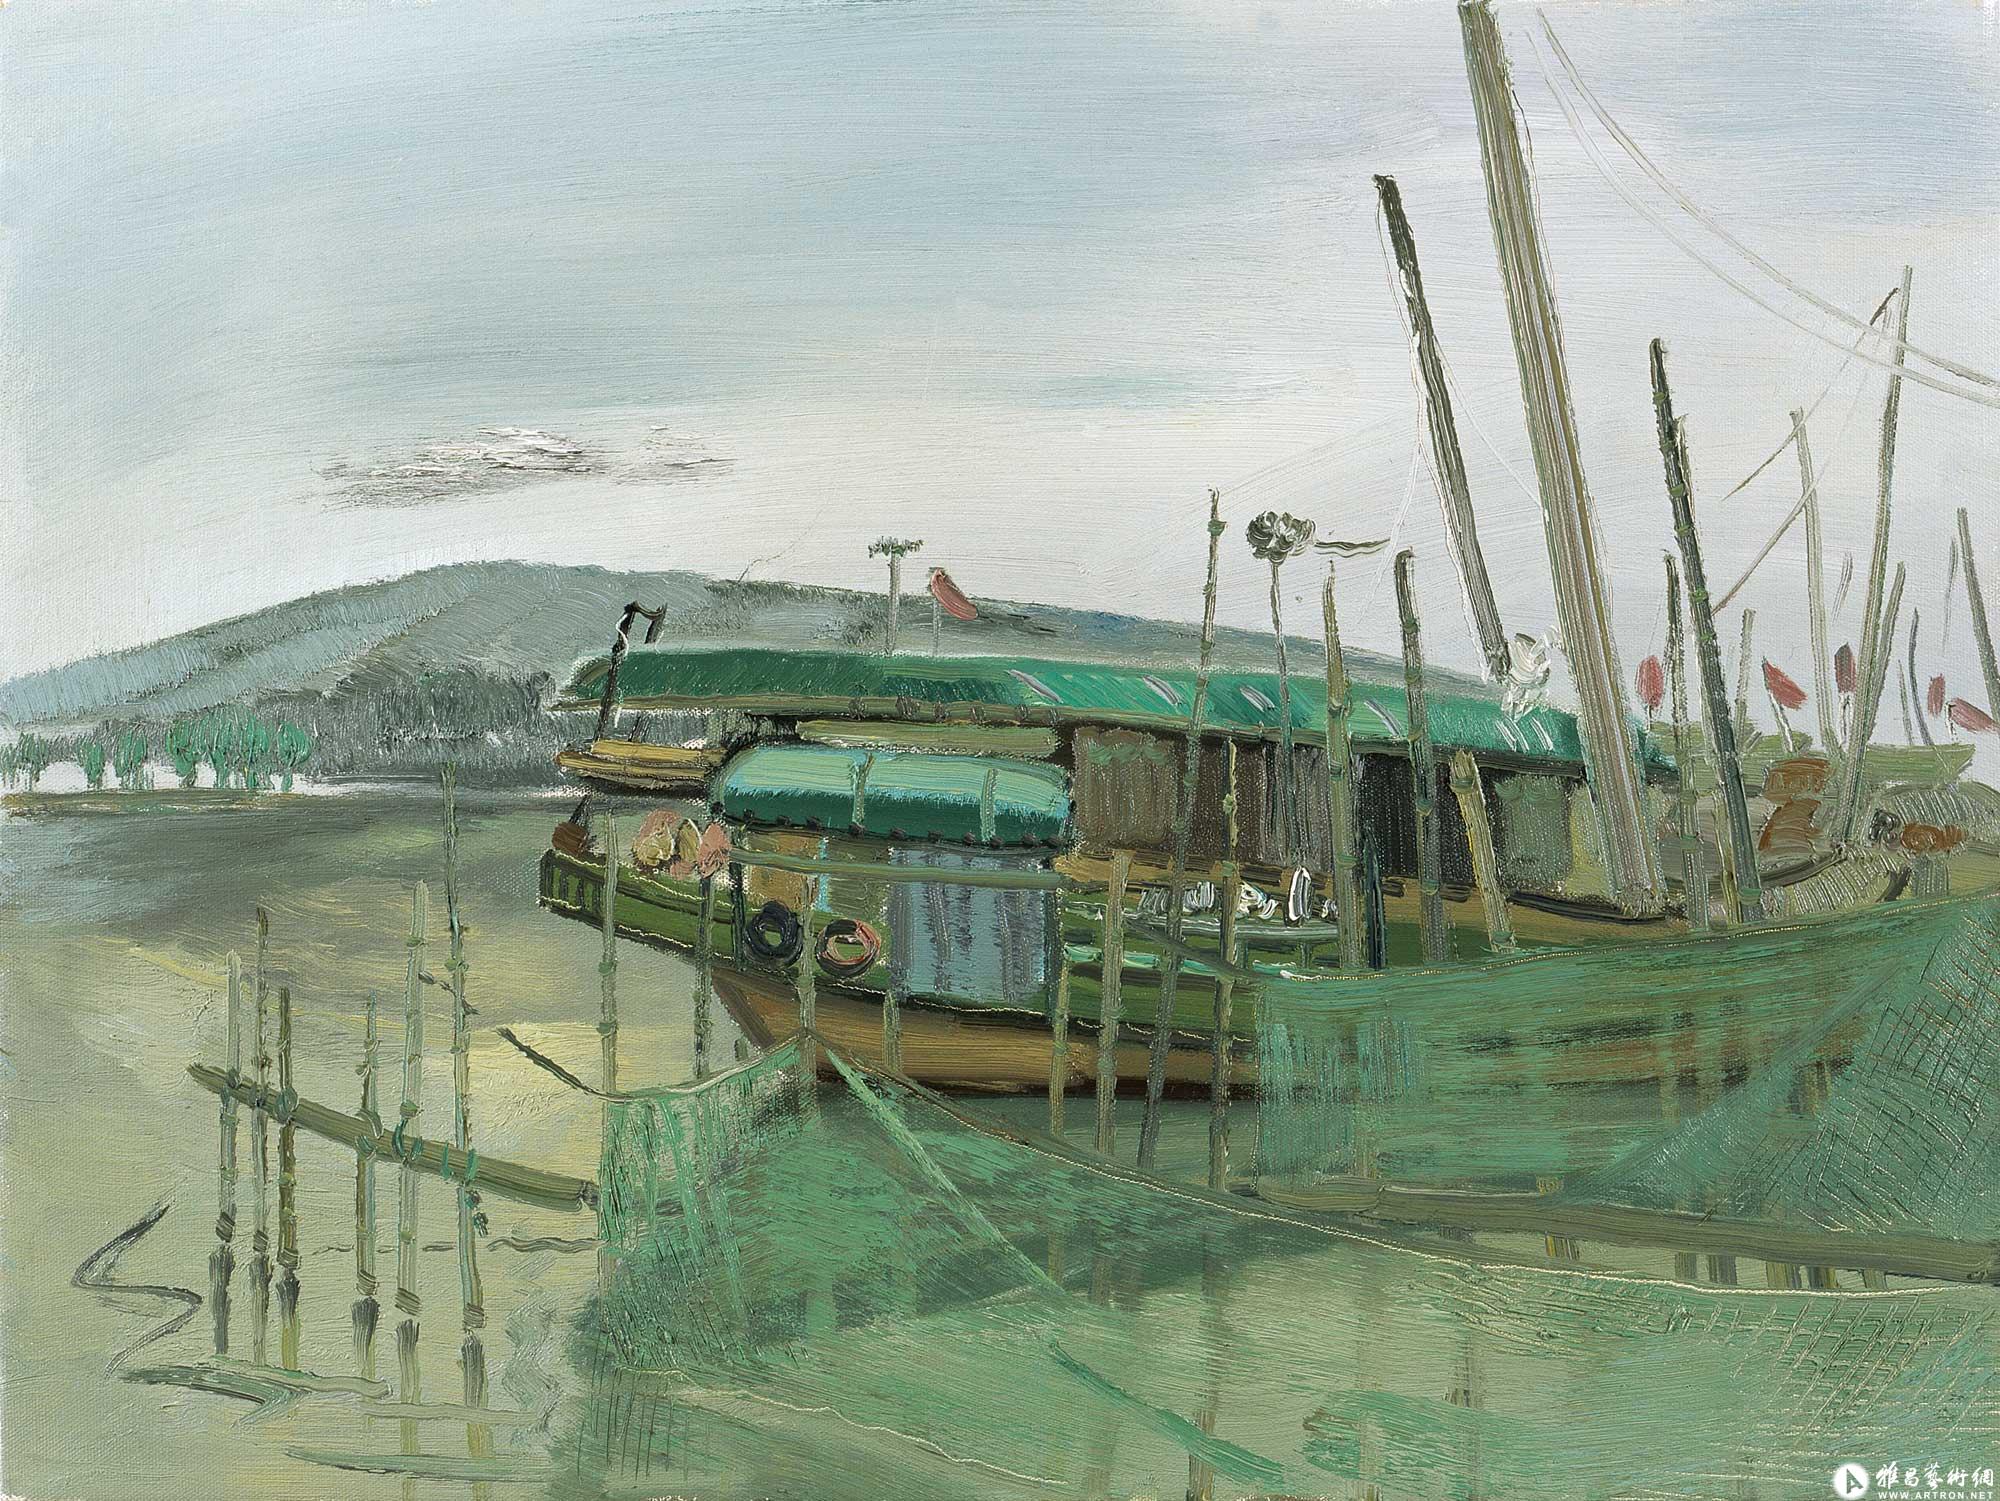 太湖打鱼船^_^Fishing boats in Taihu Lake